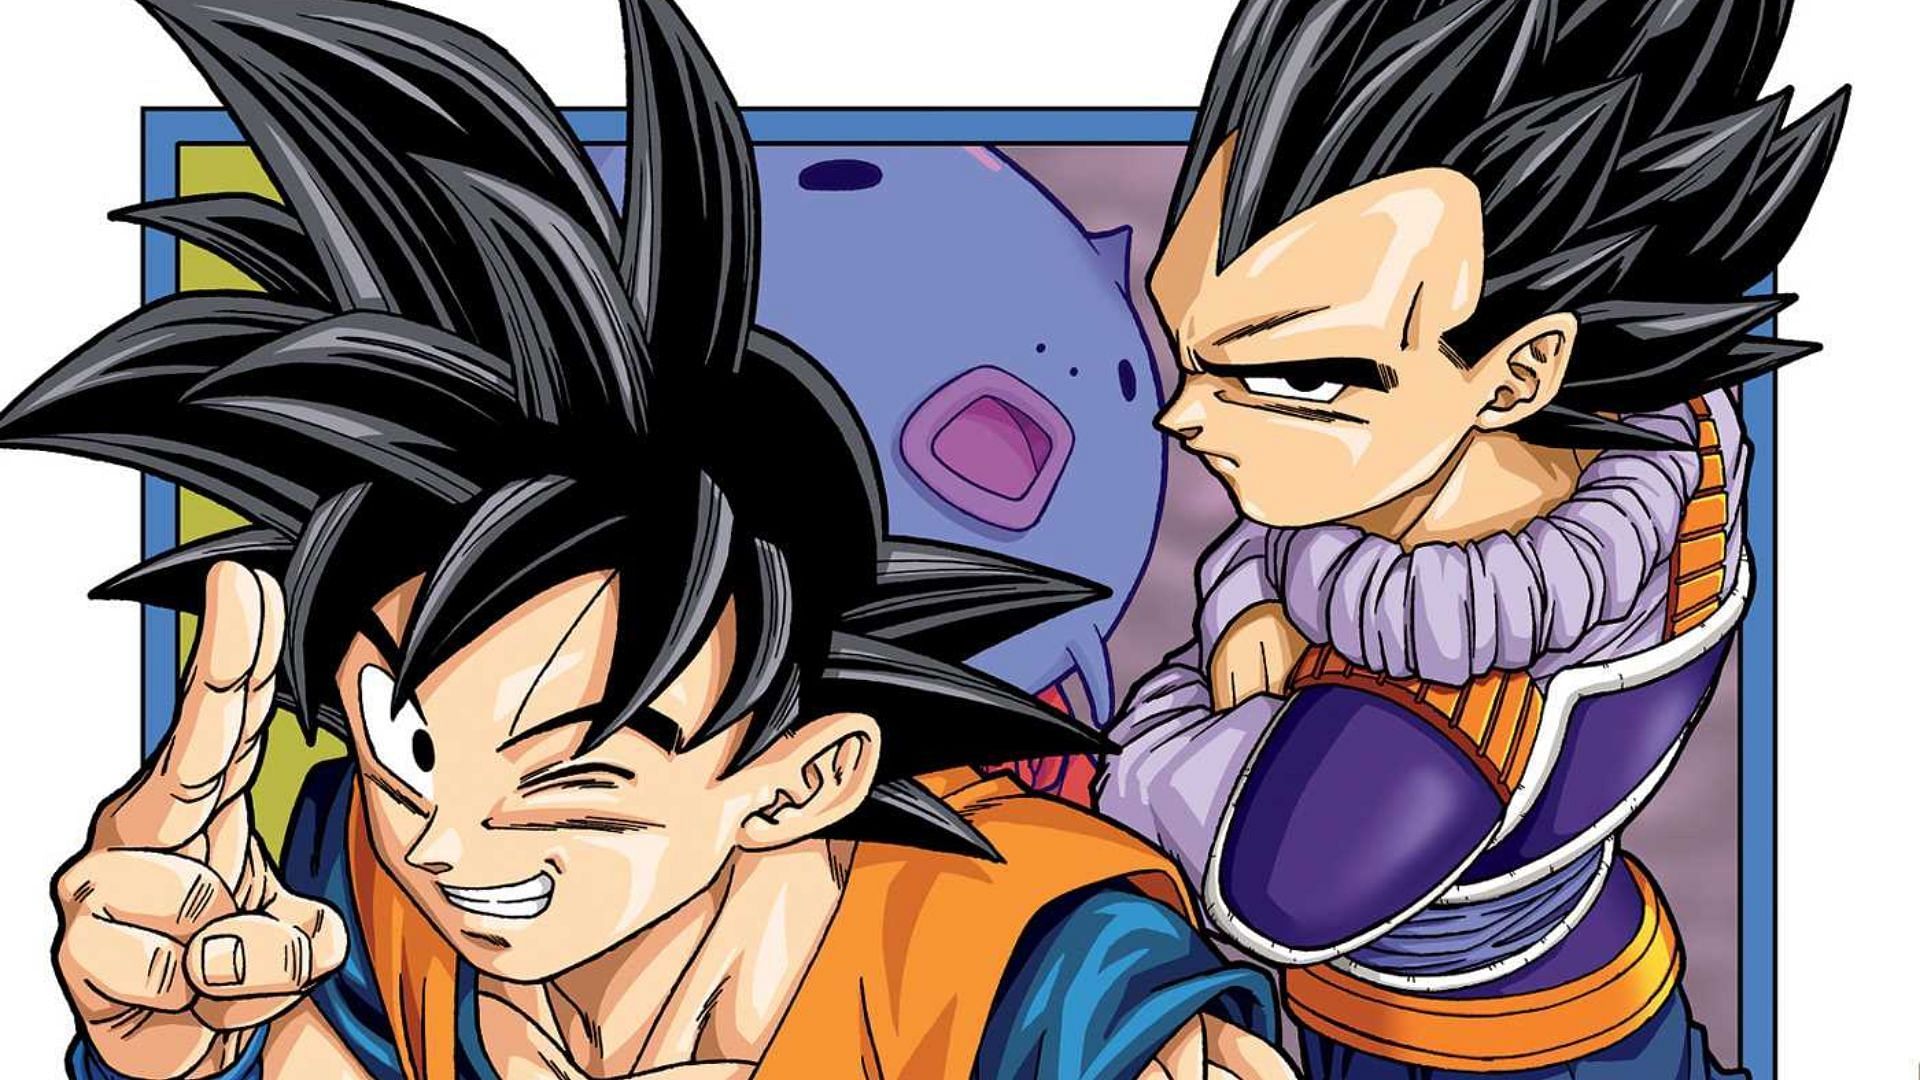 Goku and Vegeta, as seen in Dragon Ball Super manga (Image via Shueisha)